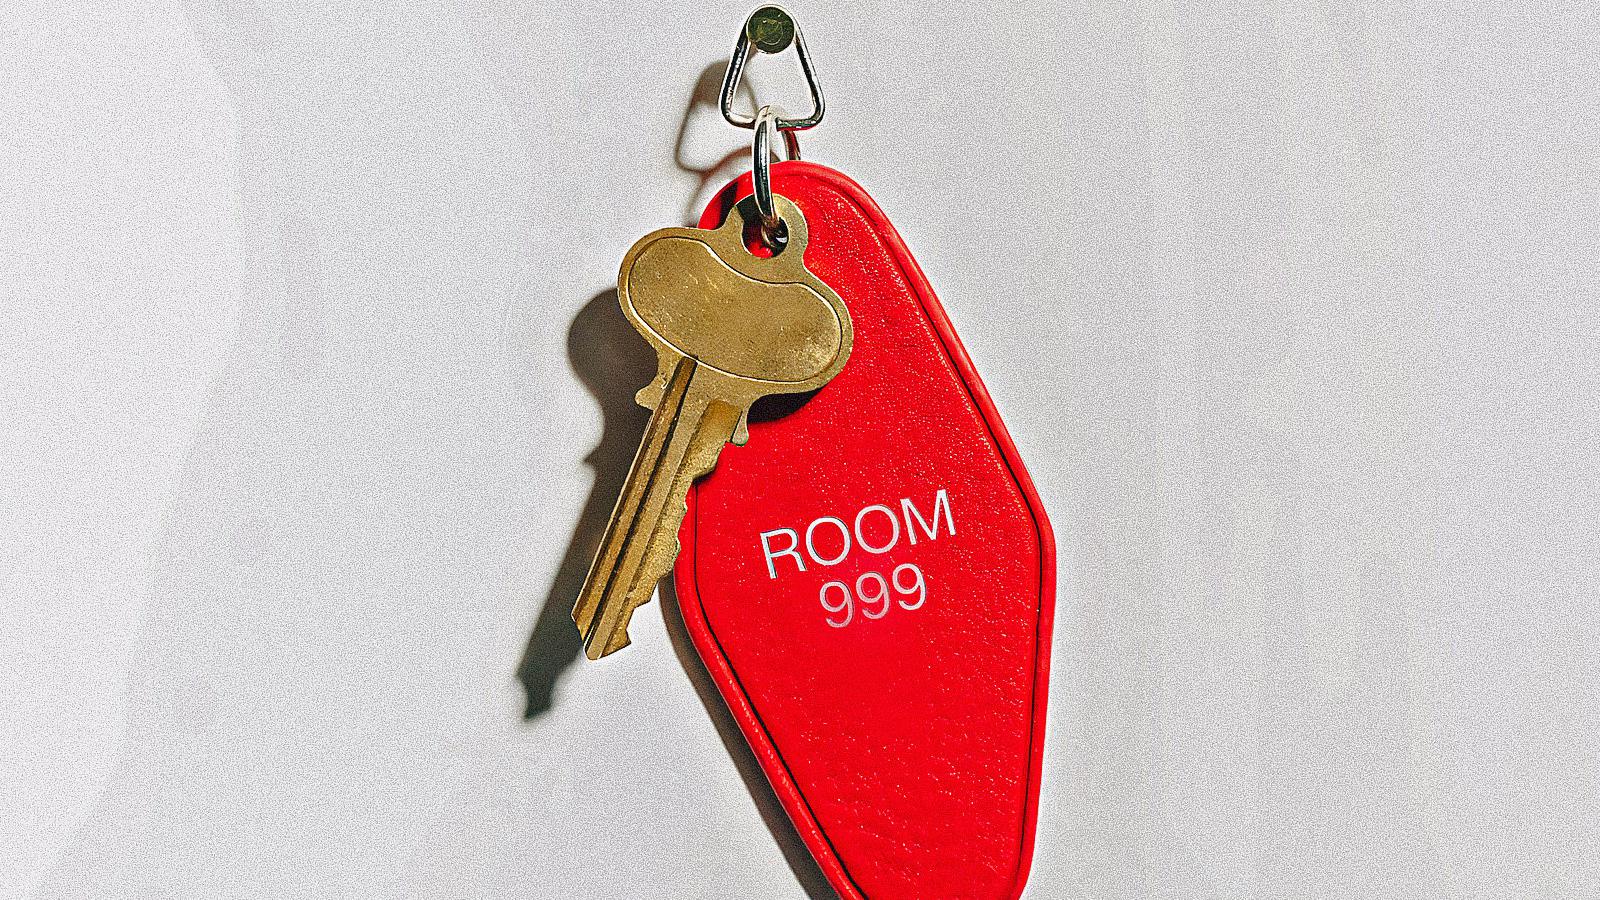 Room 999, la recensione: 30 registi e il destino del cinema